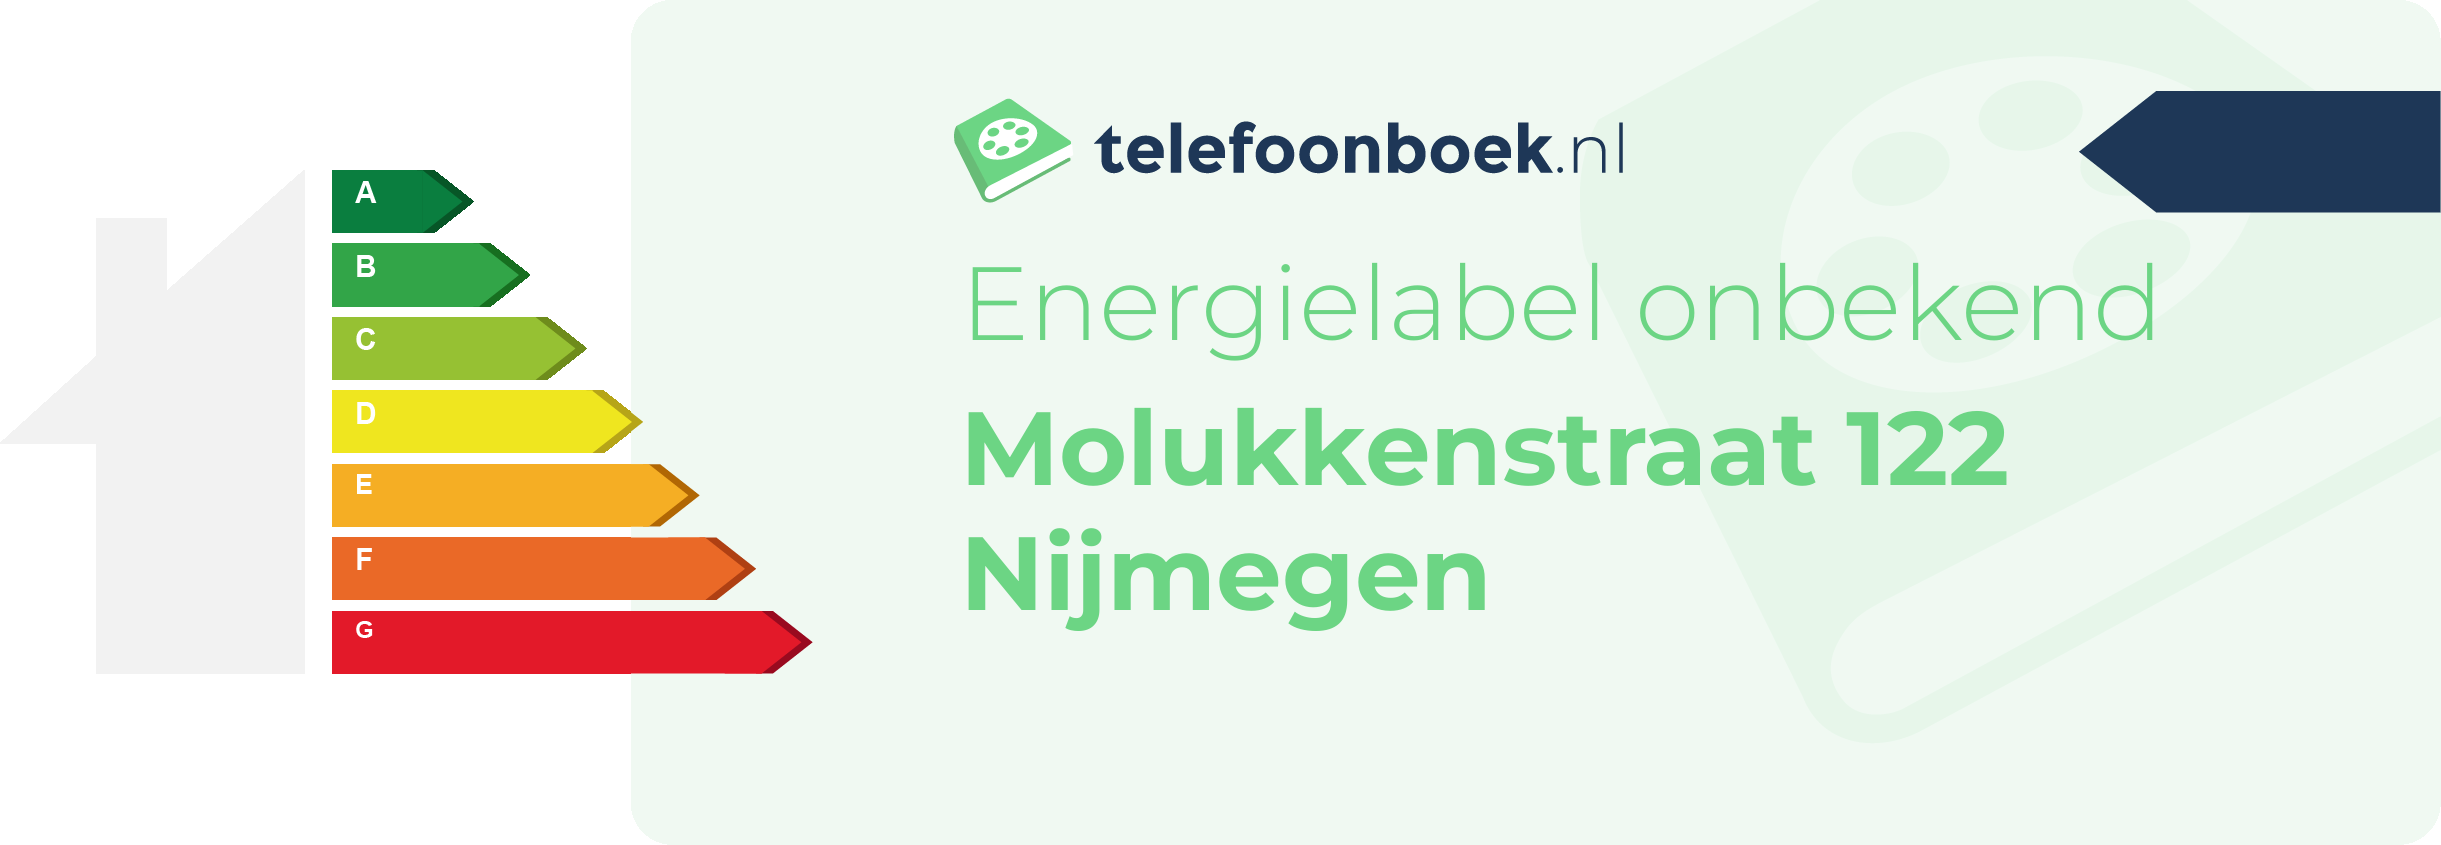 Energielabel Molukkenstraat 122 Nijmegen